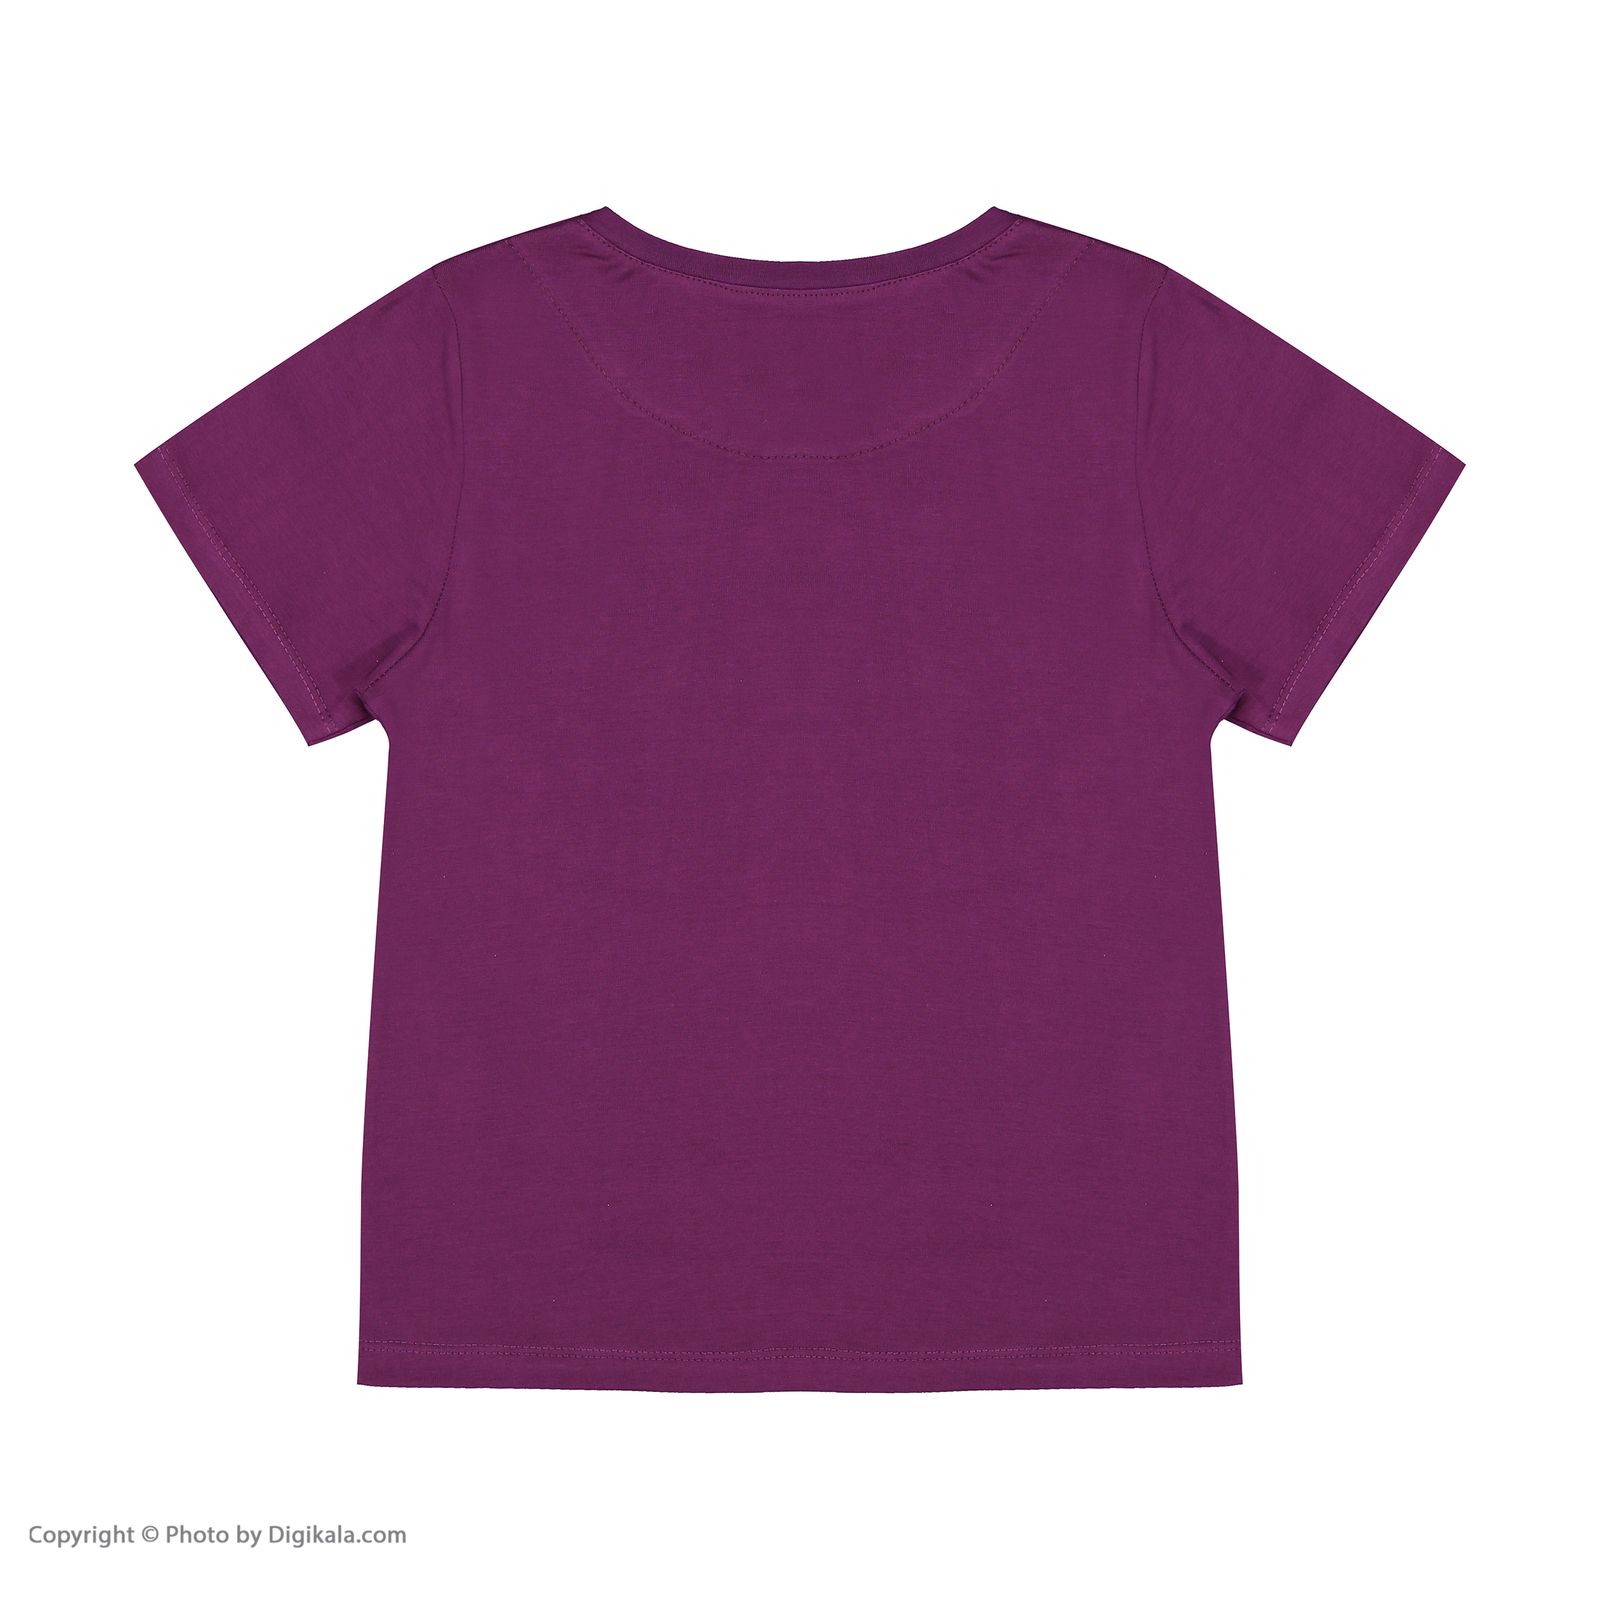 ست تی شرت و شلوار دخترانه مادر مدل 2041101-67 -  - 4